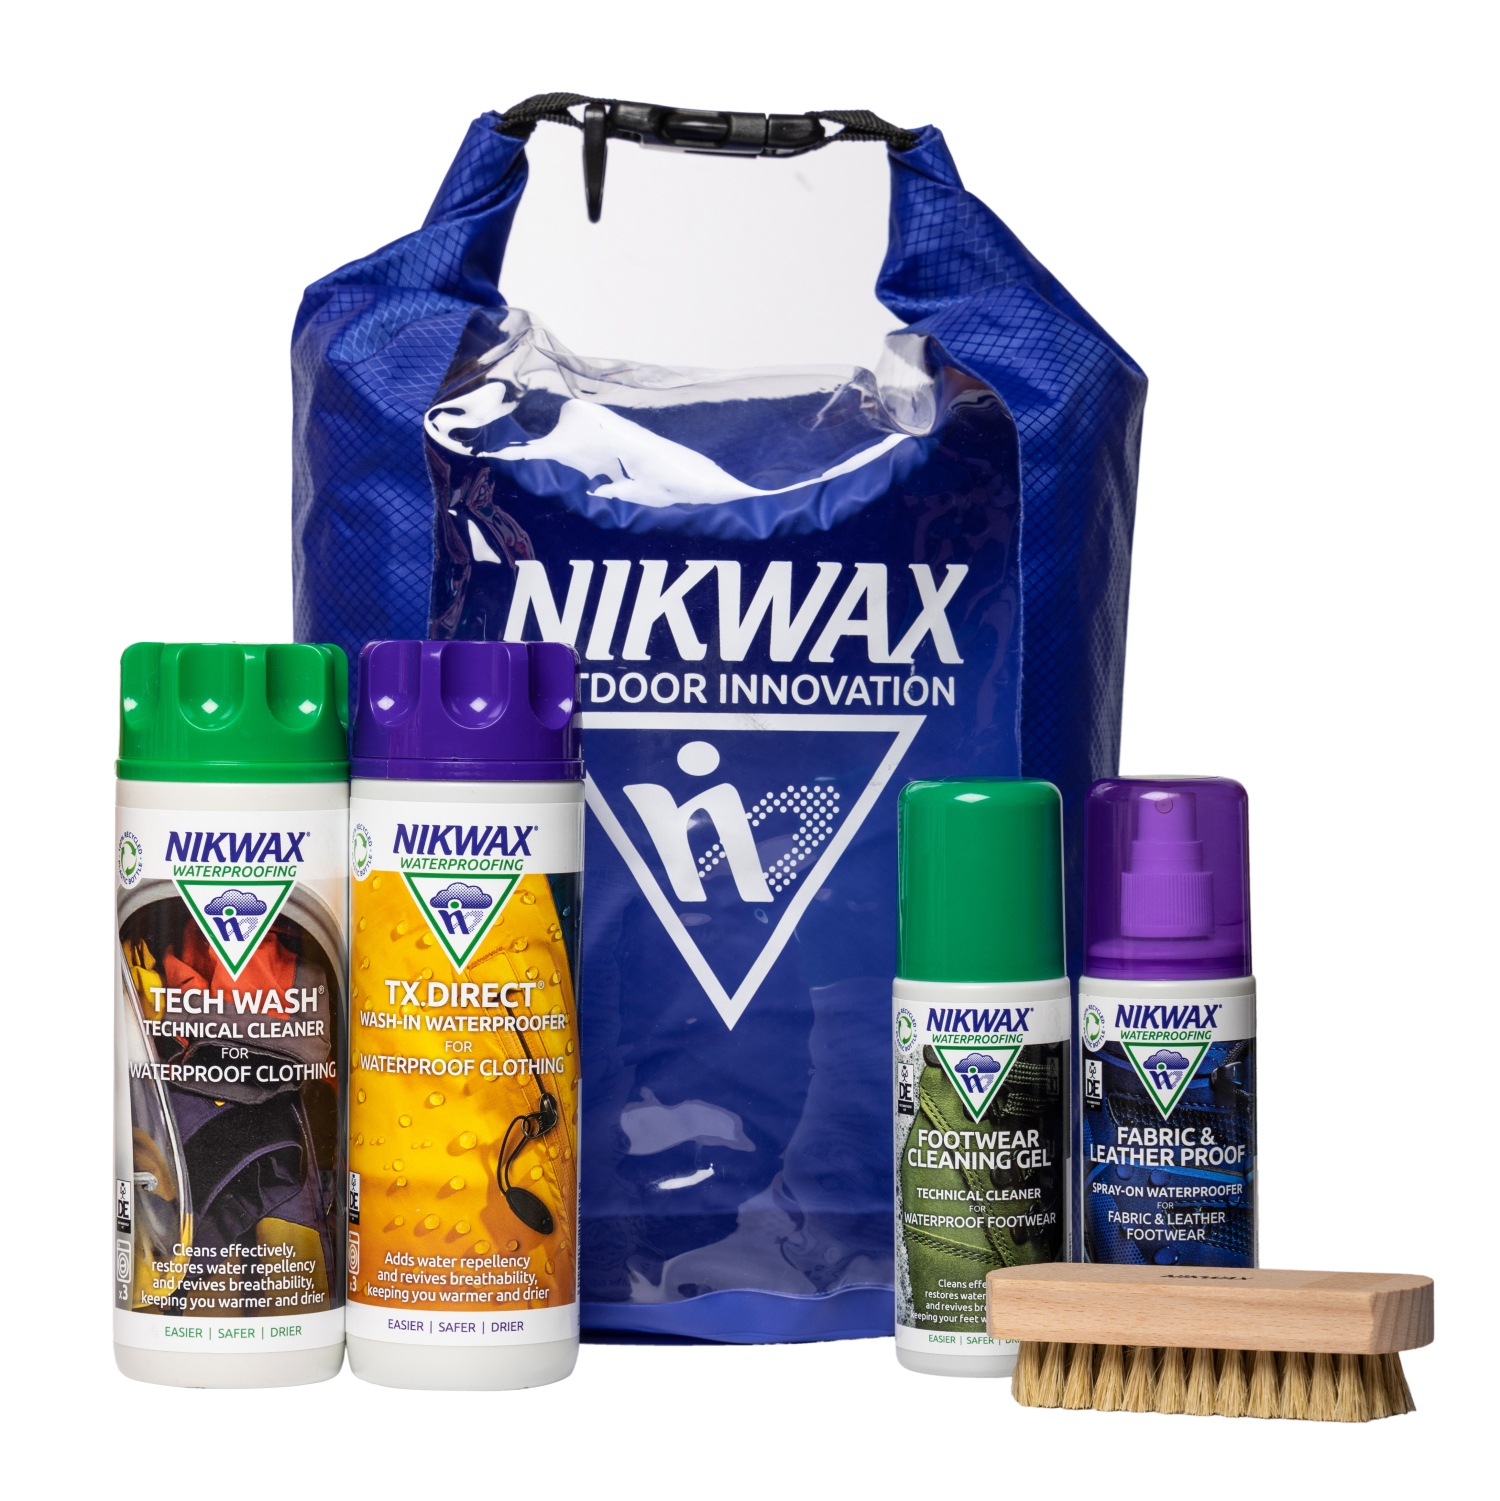 nikwax-product-bundle